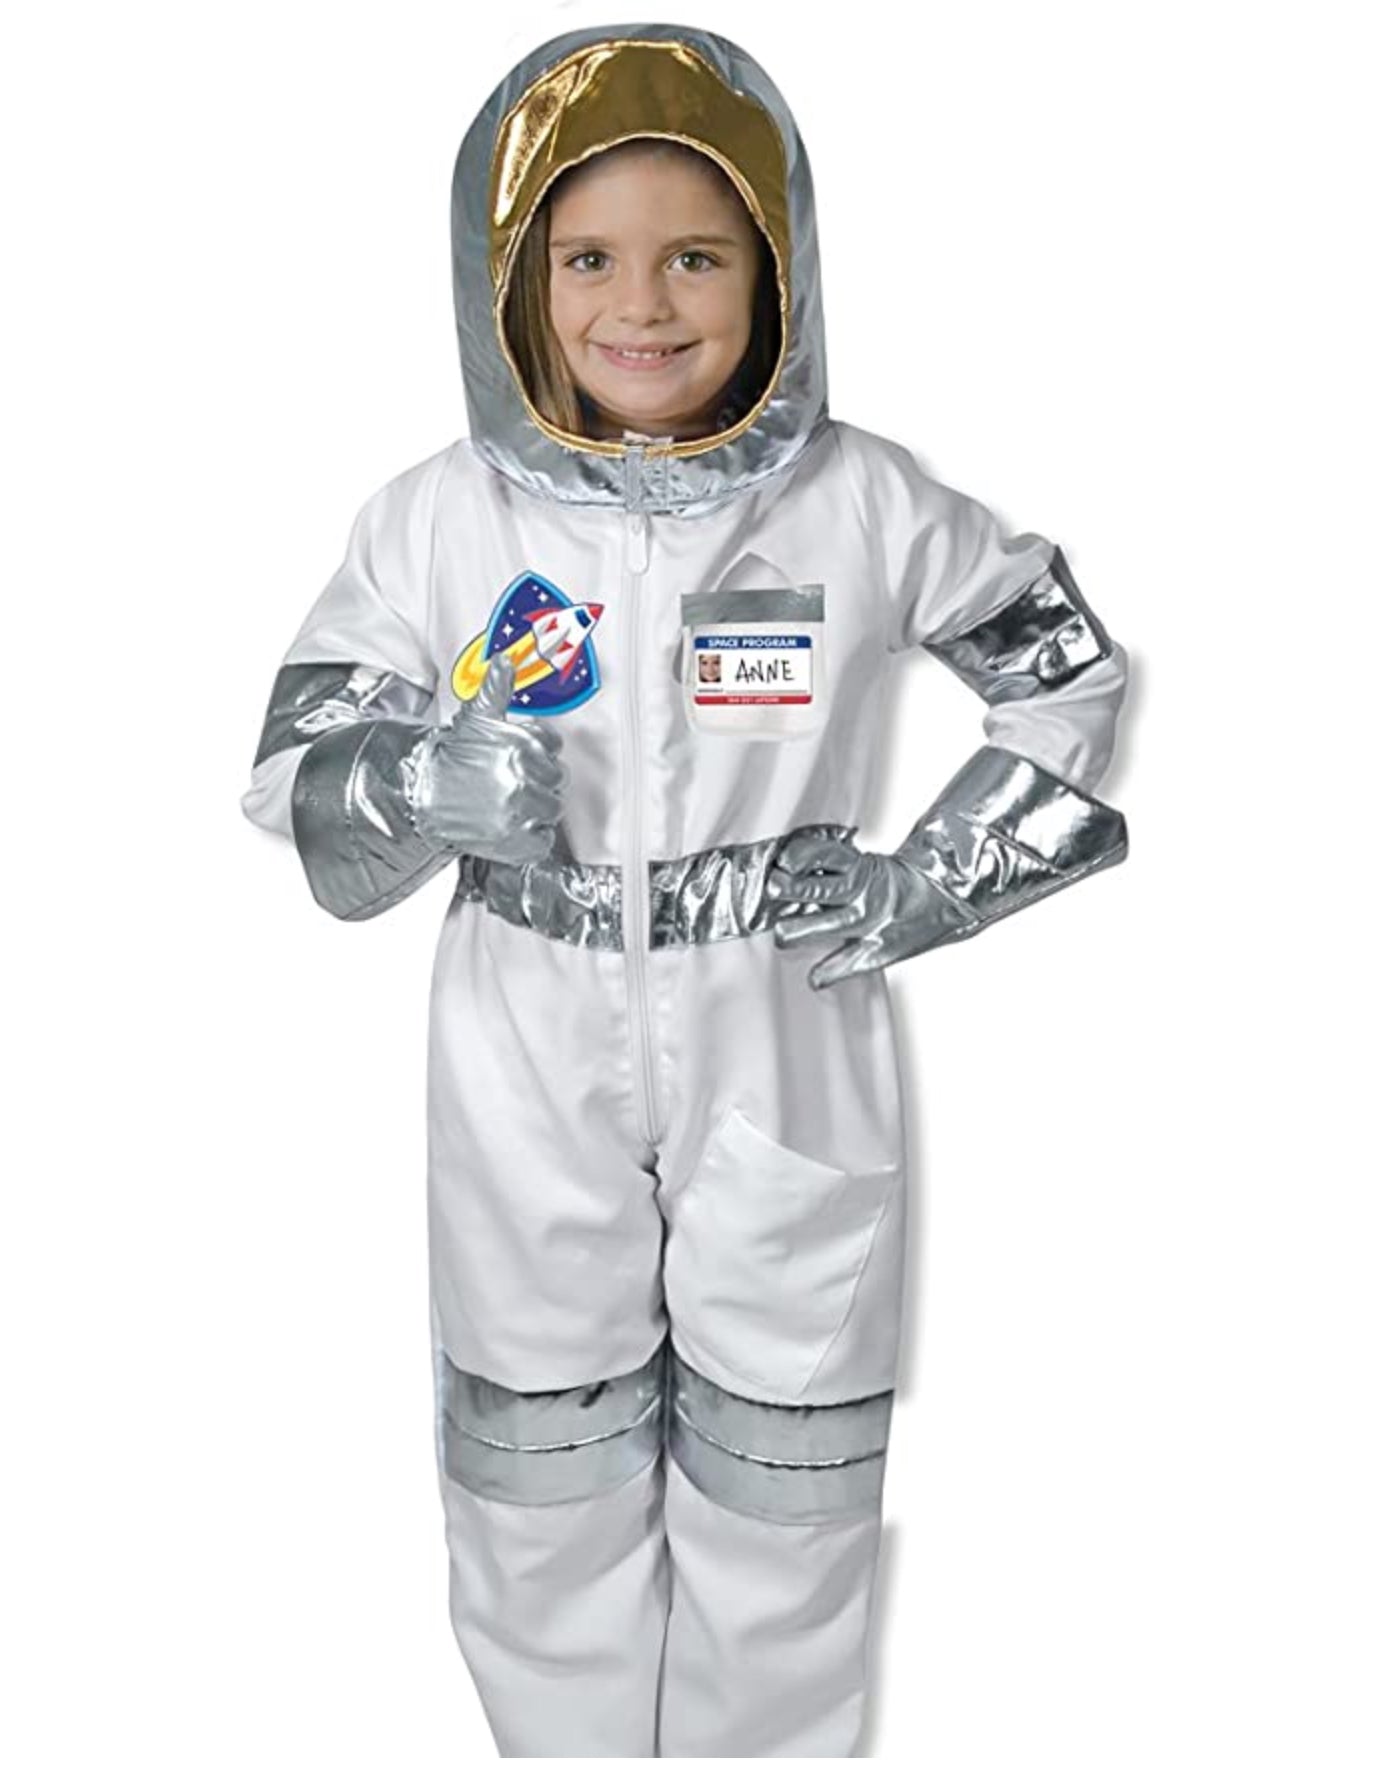 Pef superstición solicitud Disfraz de Astronauta – Maderitas Infantiles